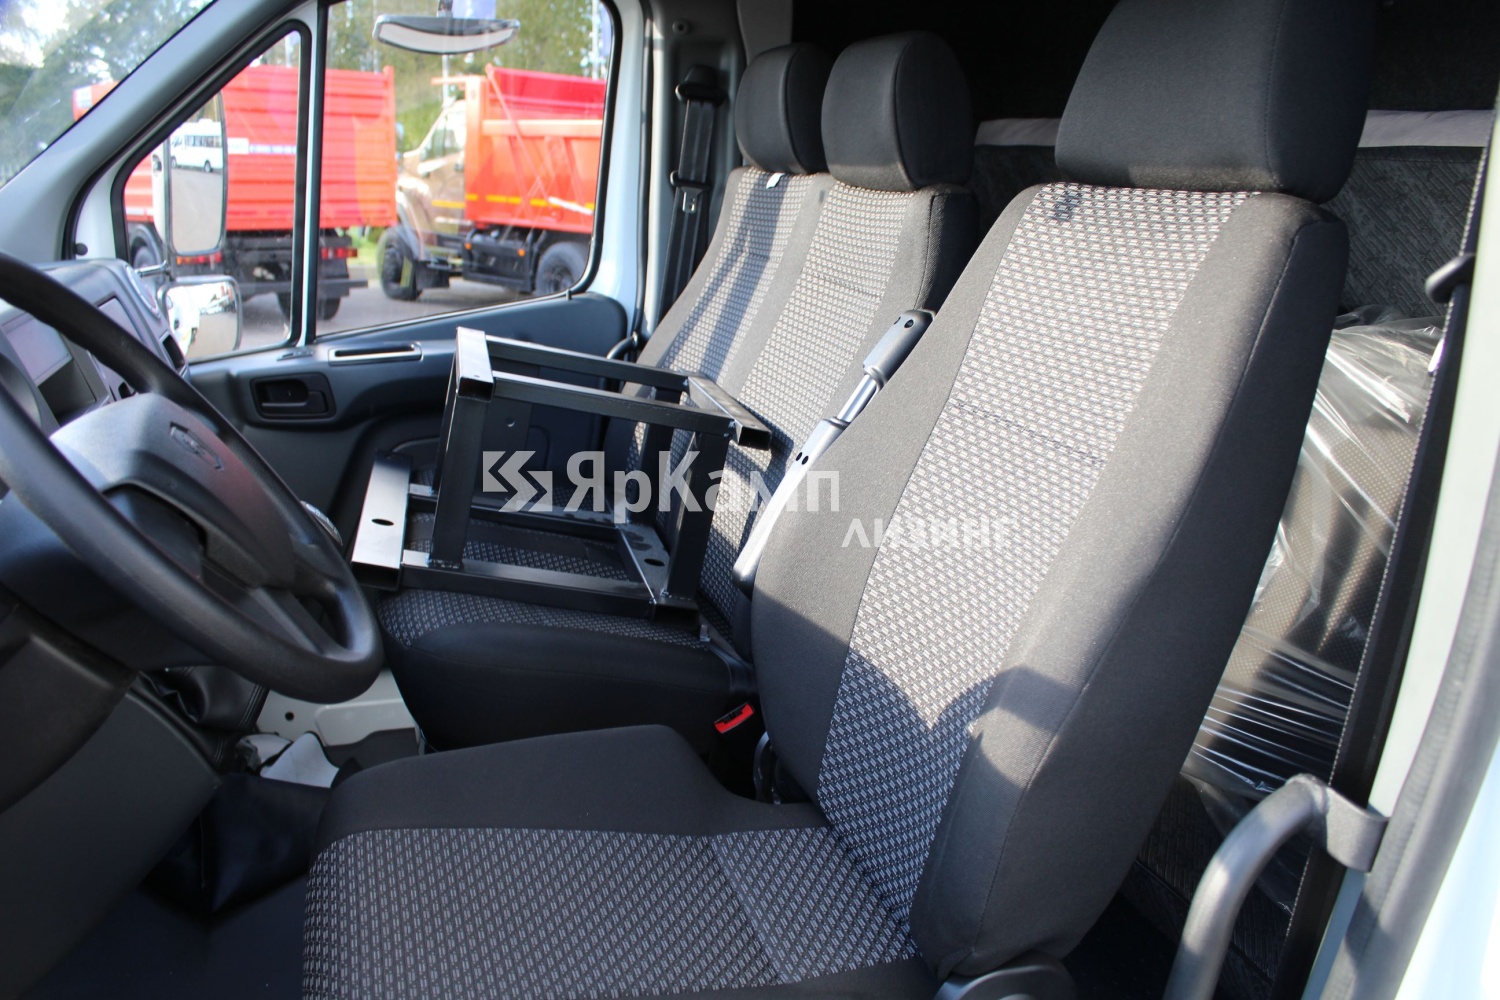 Автомобиль ГАЗ C41R13 с полуприцепом Чайка-Сервис 3784R0 поставлен в лизинг